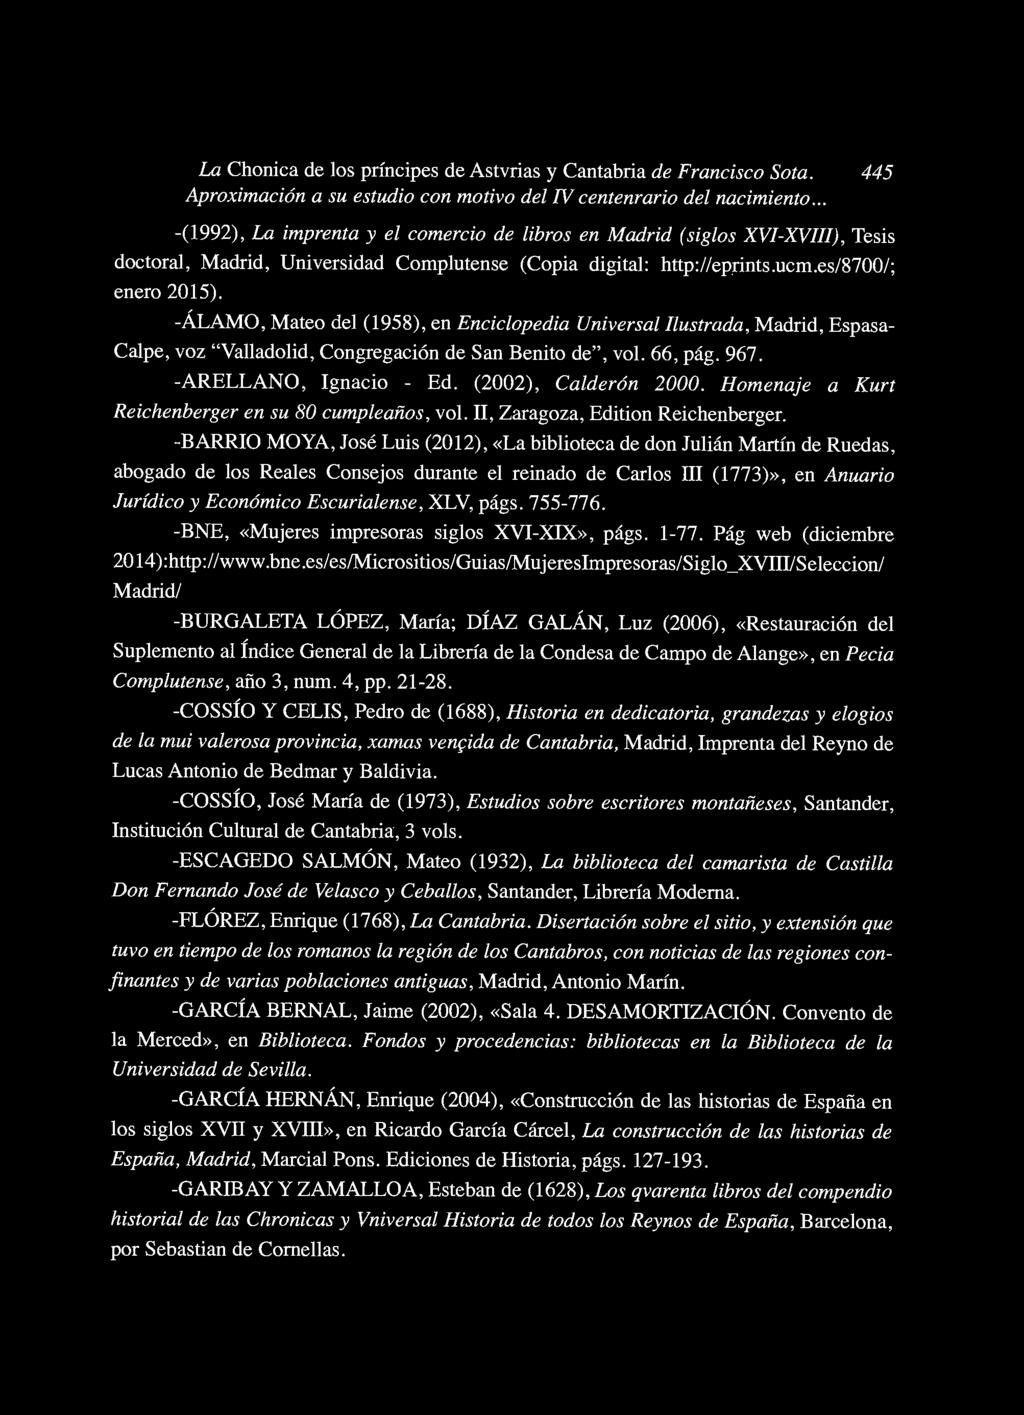 -ÁLAMO, Mateo del (1958), en Enciclopedia Universal Ilustrada, Madrid, Espasa Calpe, voz "Valladolid, Congregación de San Benito de", vol. 66, pág. 967. -ARELLANO, Ignacio - Ed. (2002), Calderón 2000.